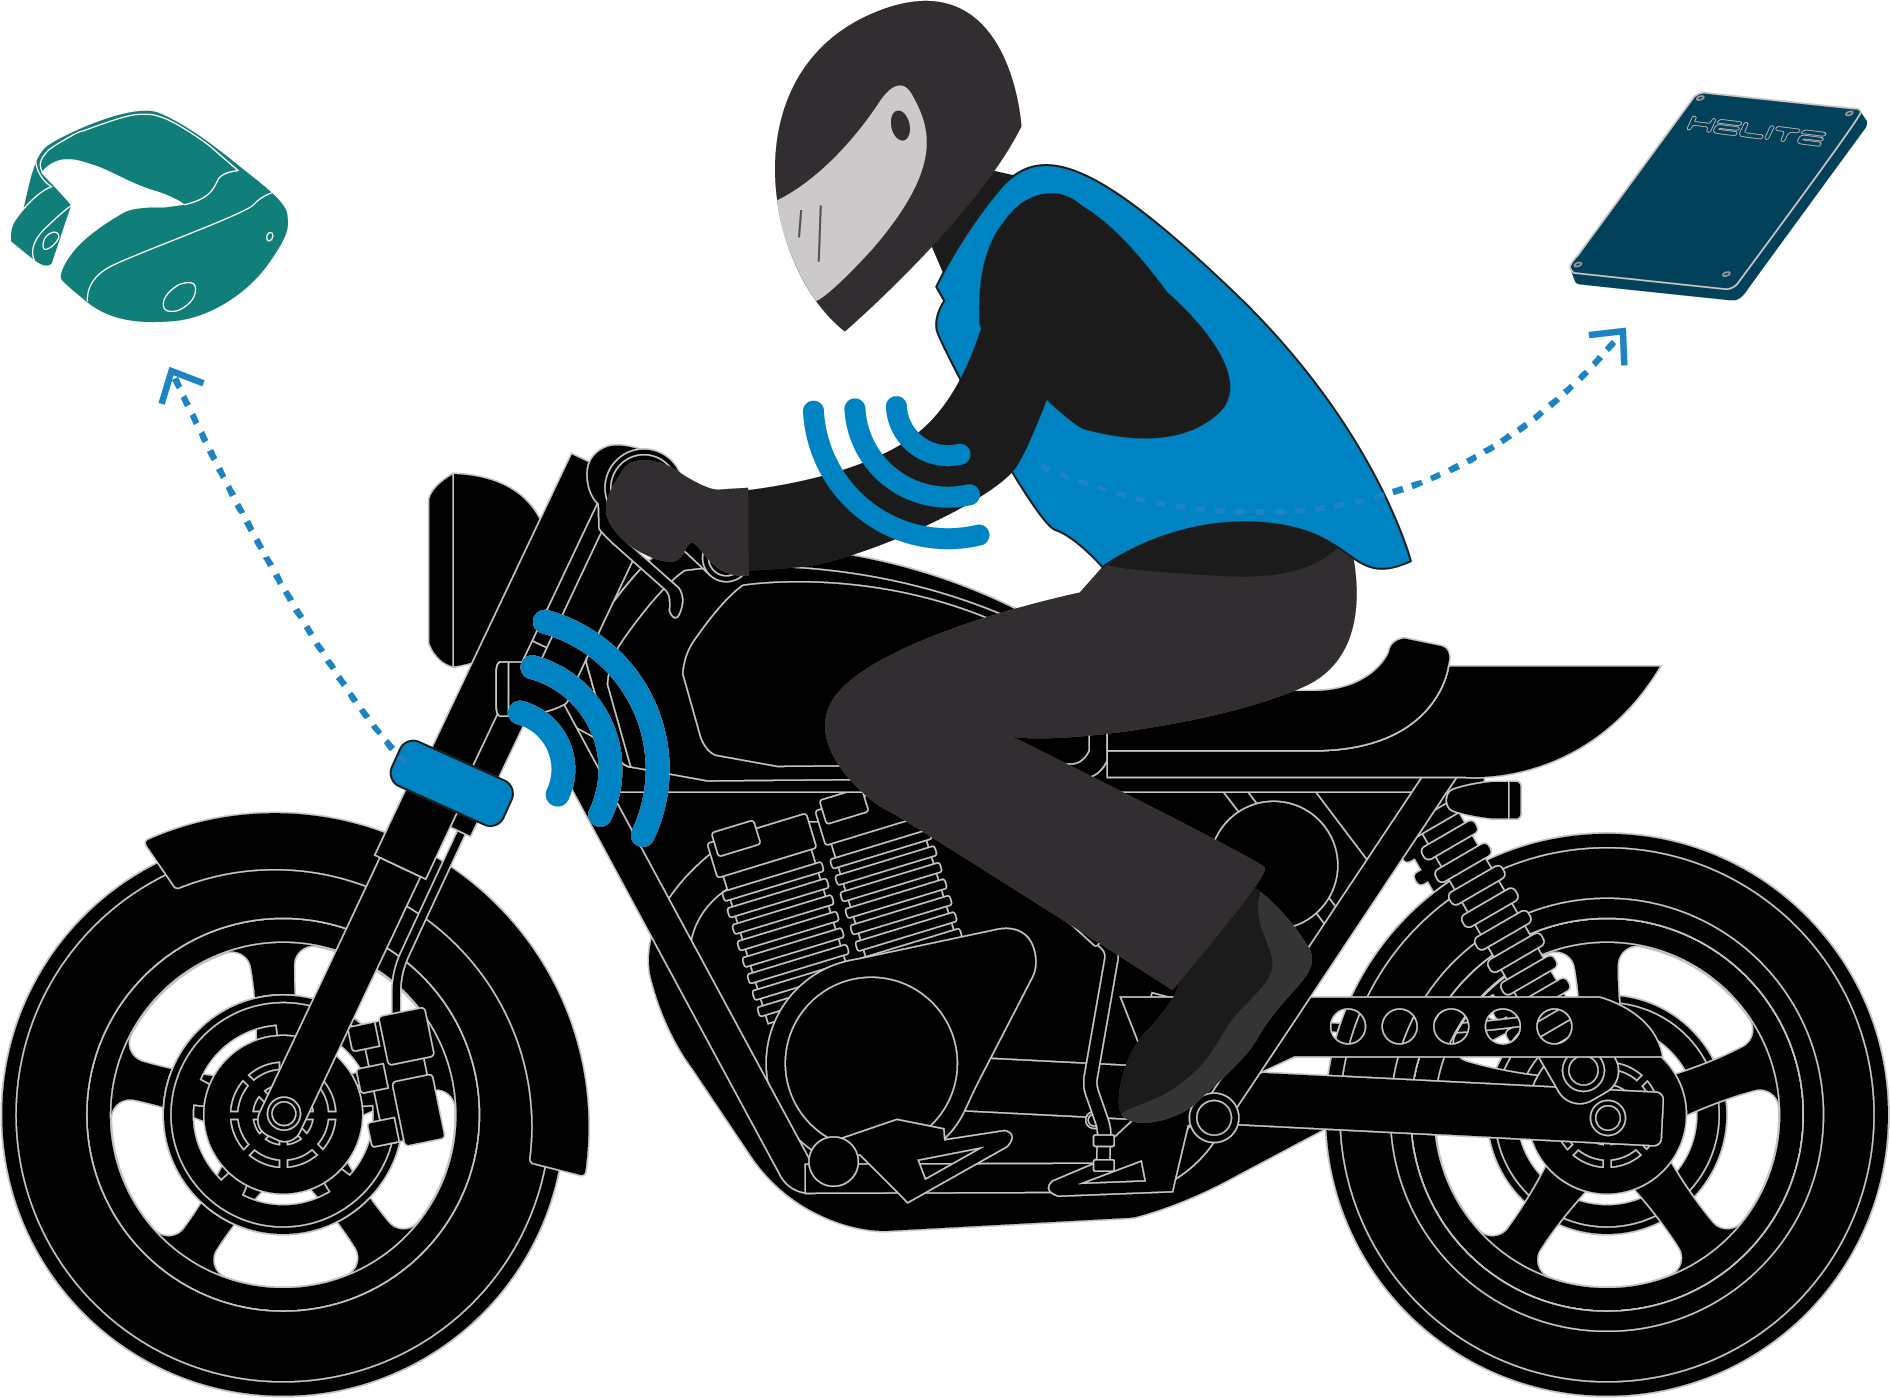 Grafik mit Sensoren der Airbag-Systeme für Motorradfahrer